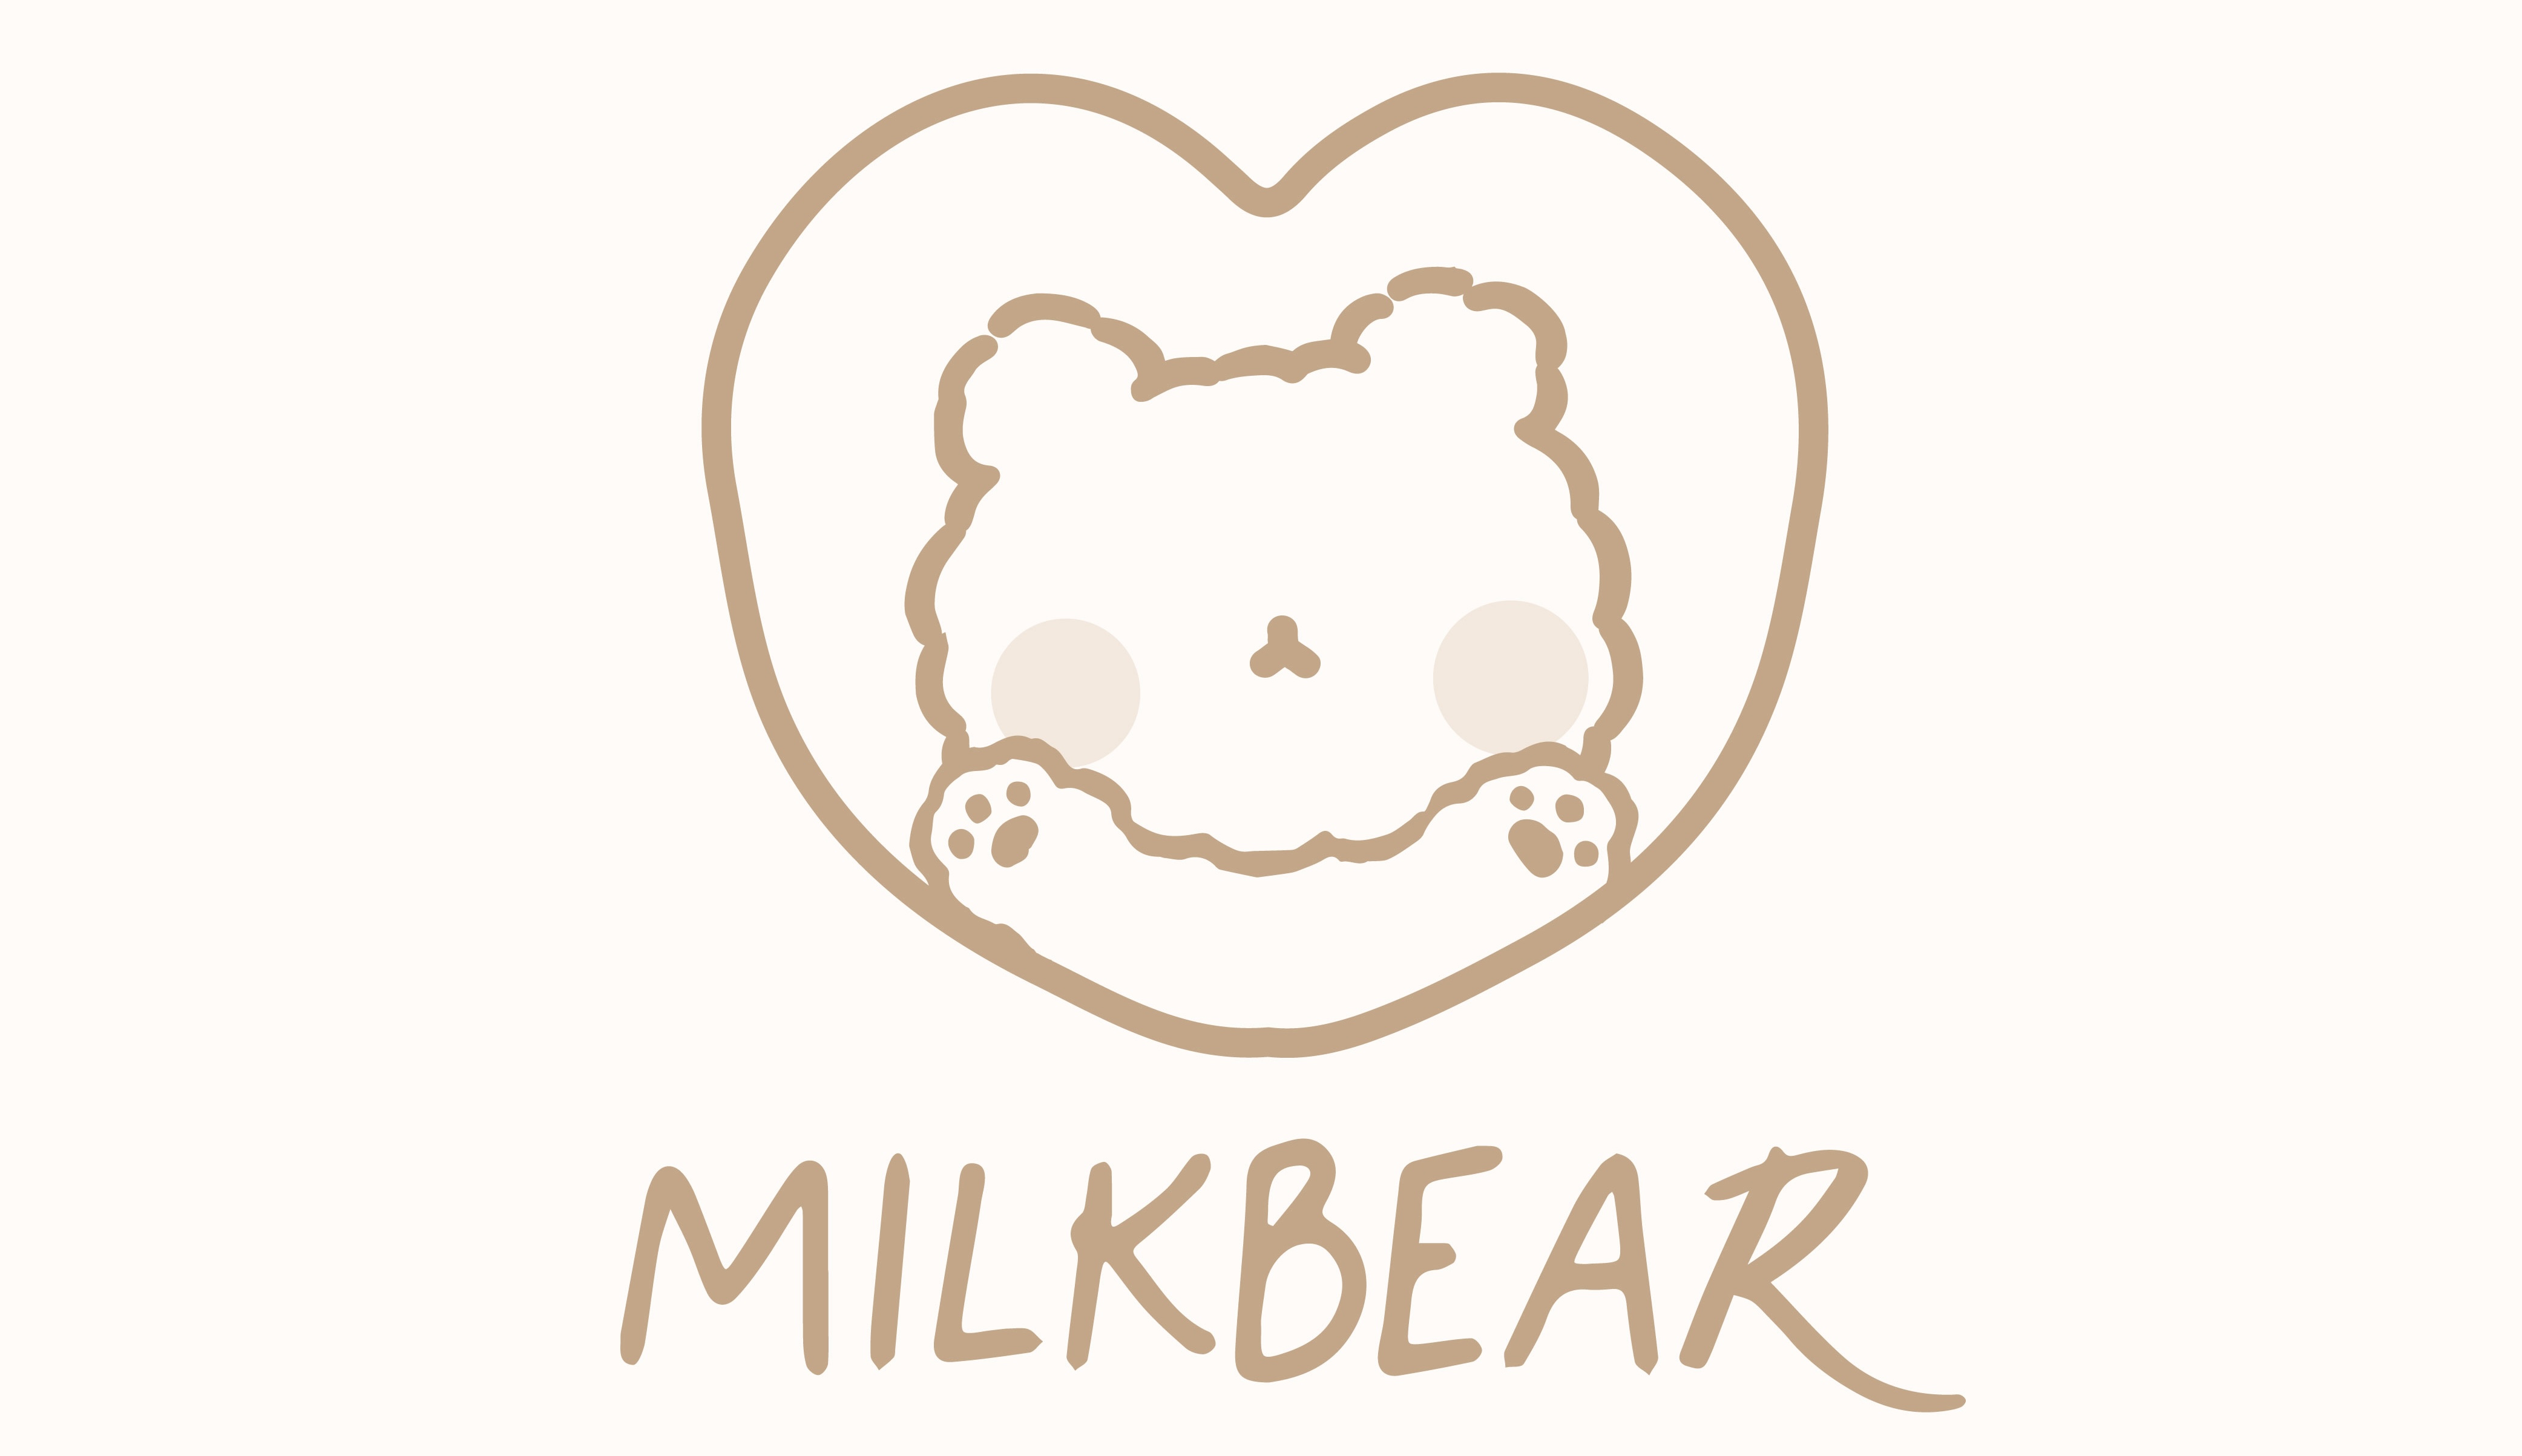 Milkbear ◡̈